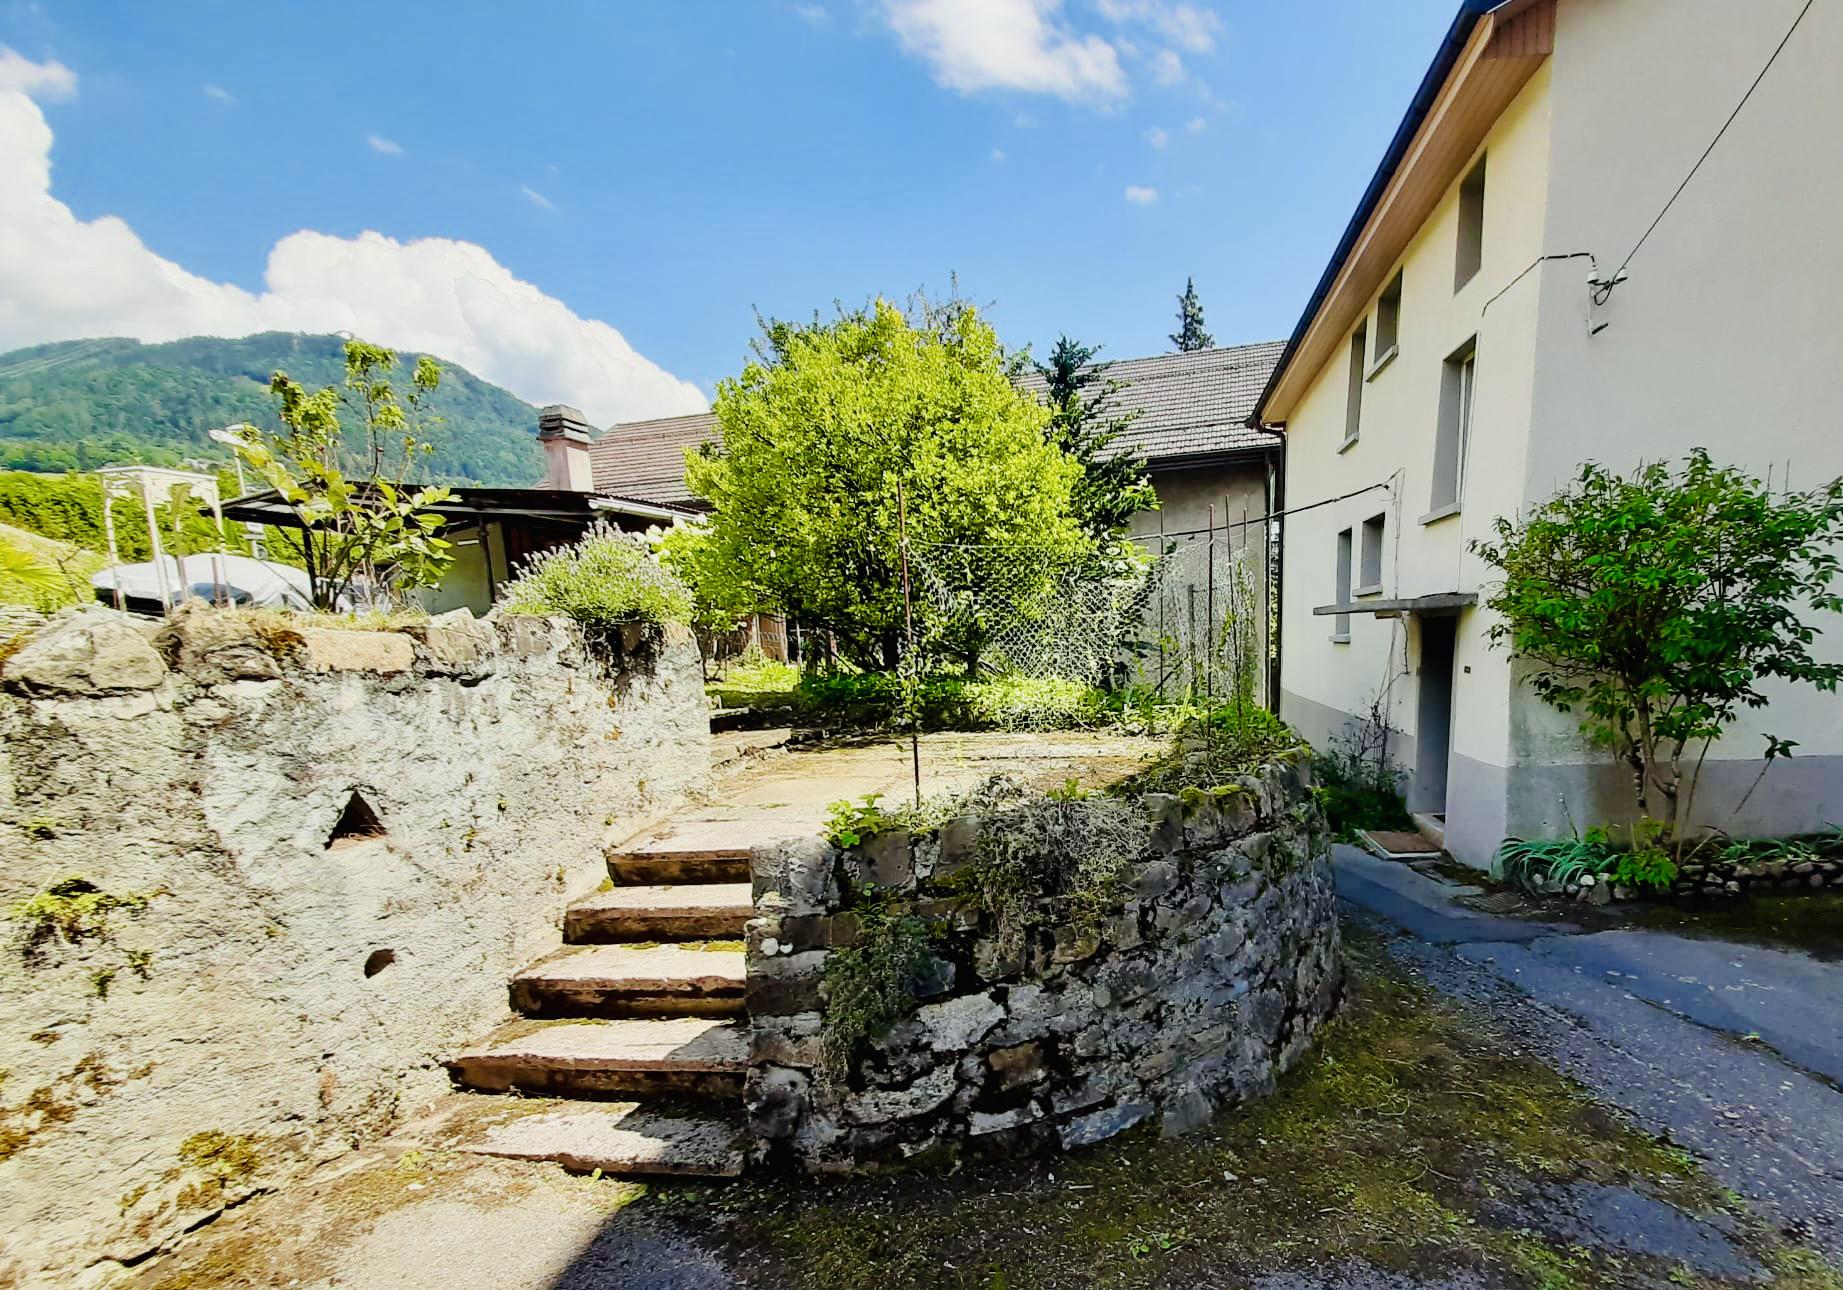 À vendre à Montreux : appartement 3.5 pièces dans résidence calme, proche du Centre ville